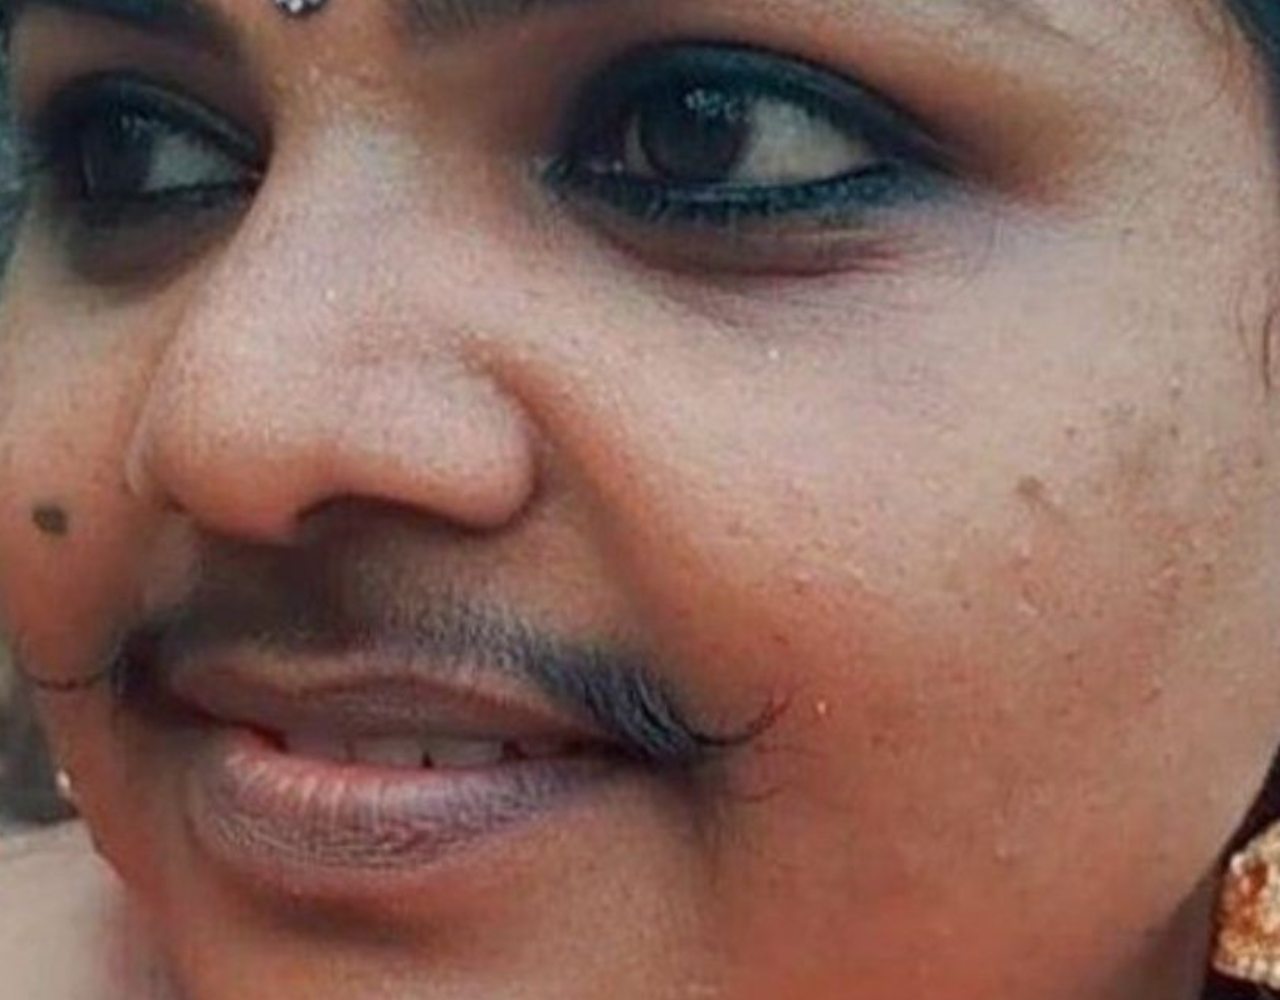 "Nunca me he sentido menos bella": Ella es Shyja, la mujer con bigote viral por su apariencia